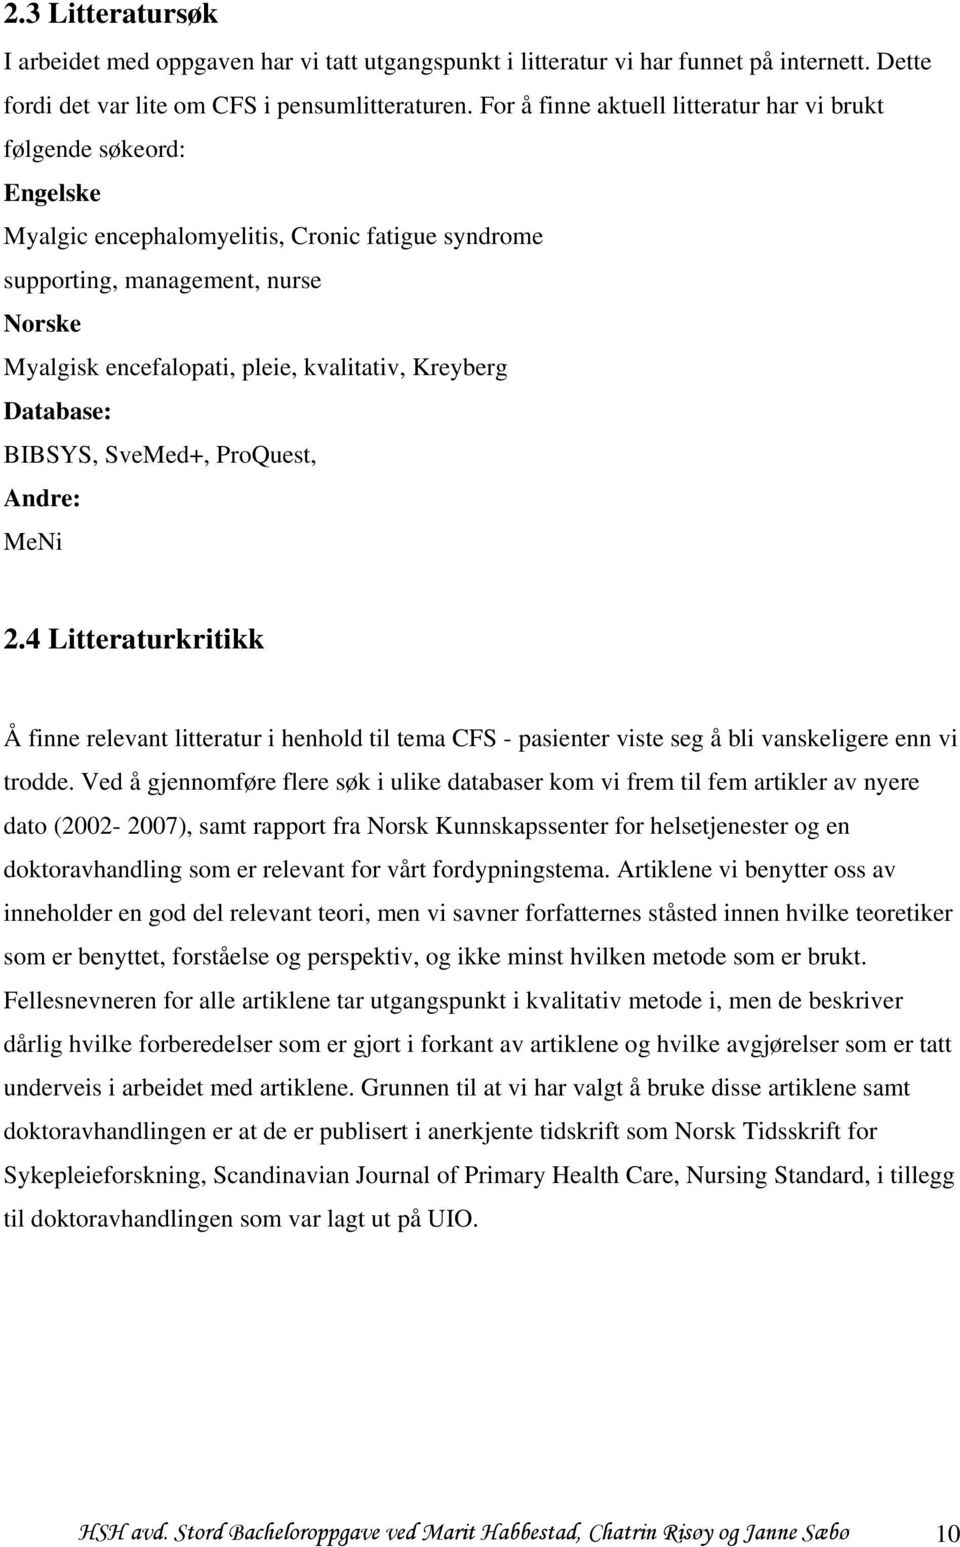 kvalitativ, Kreyberg Database: BIBSYS, SveMed+, ProQuest, Andre: MeNi 2.4 Litteraturkritikk Å finne relevant litteratur i henhold til tema CFS - pasienter viste seg å bli vanskeligere enn vi trodde.